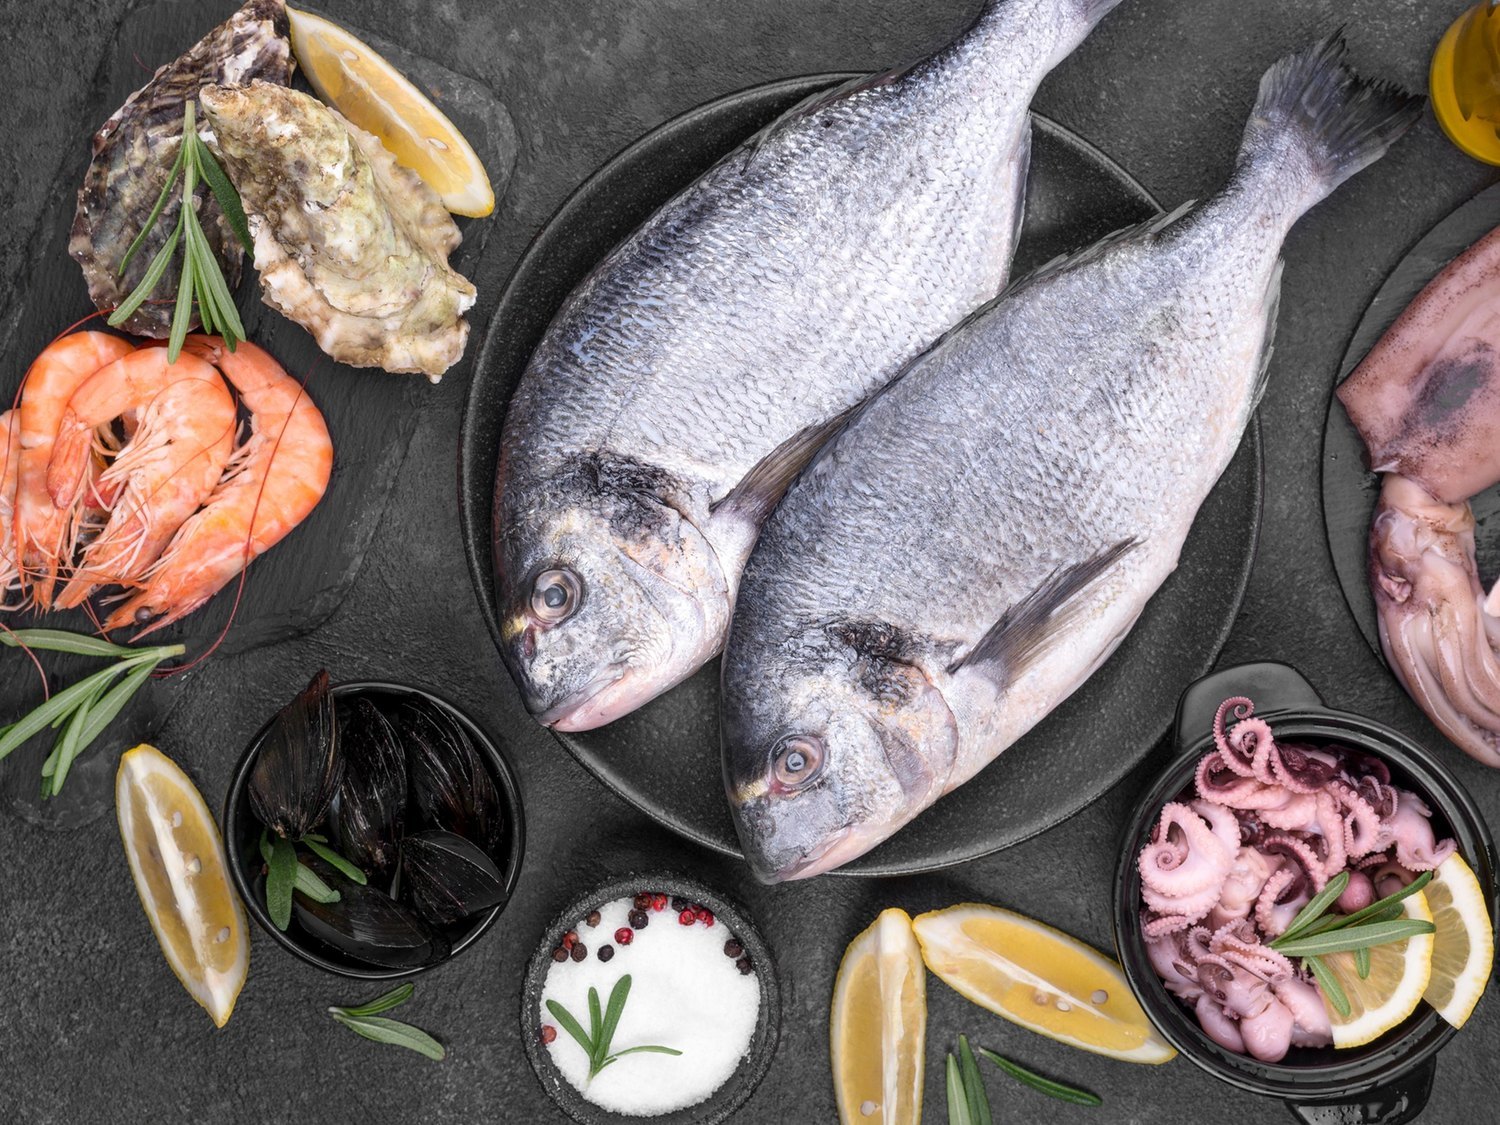 ¿Qué pescados debes evitar para reducir el riesgo de intoxicación por ingerir mercurio?